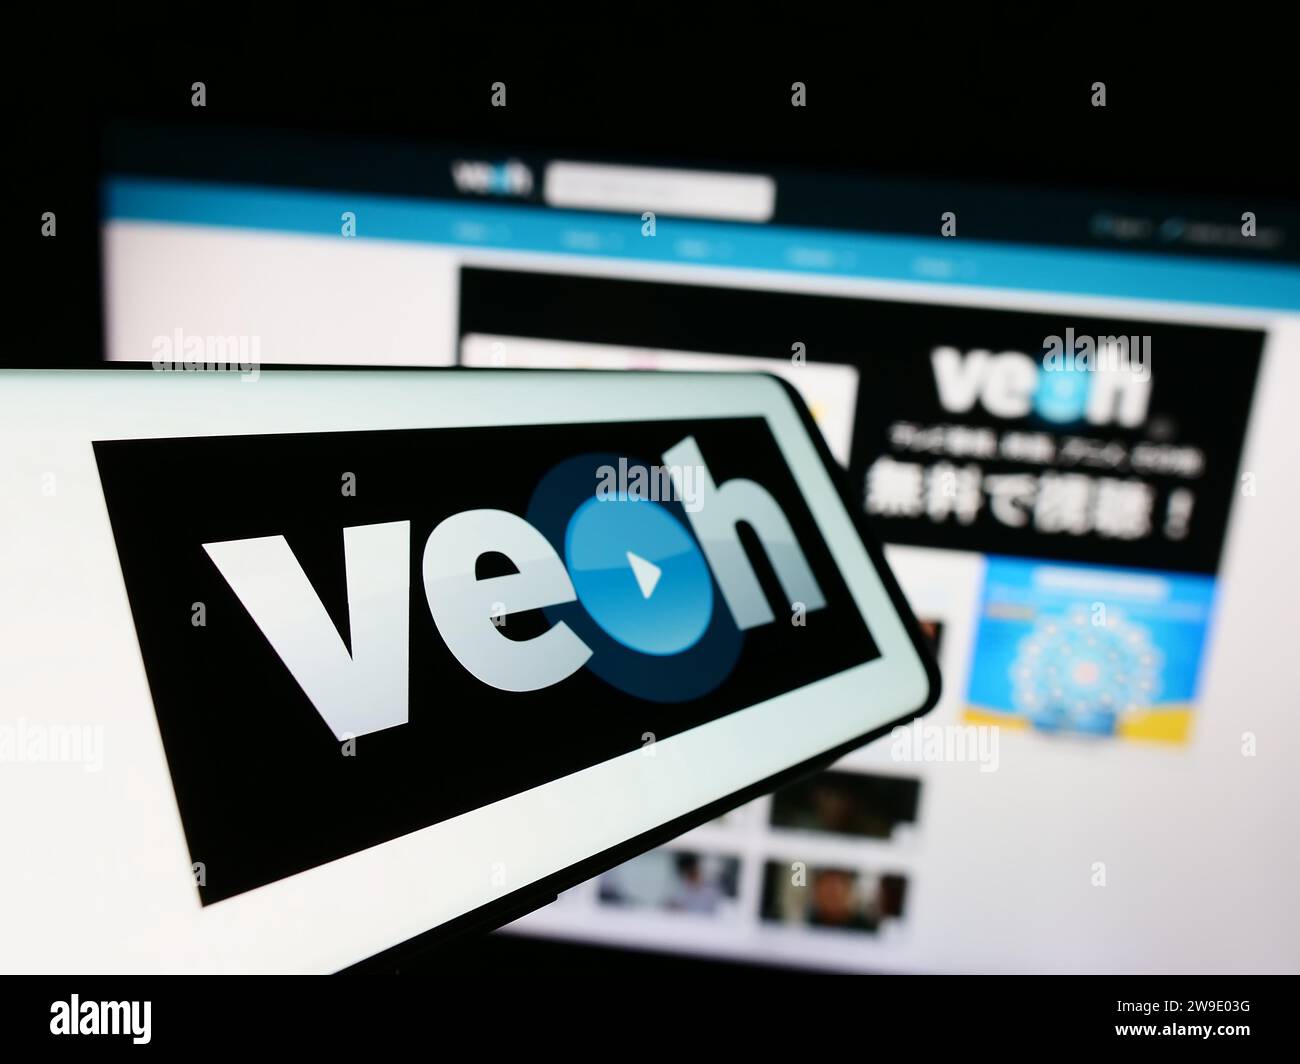 Mobiltelefon mit Logo der amerikanischen Videofreigabeplattform Veoh Networks Inc. Vor der Website. Fokussieren Sie sich auf die linke Mitte des Telefondisplays. Stockfoto